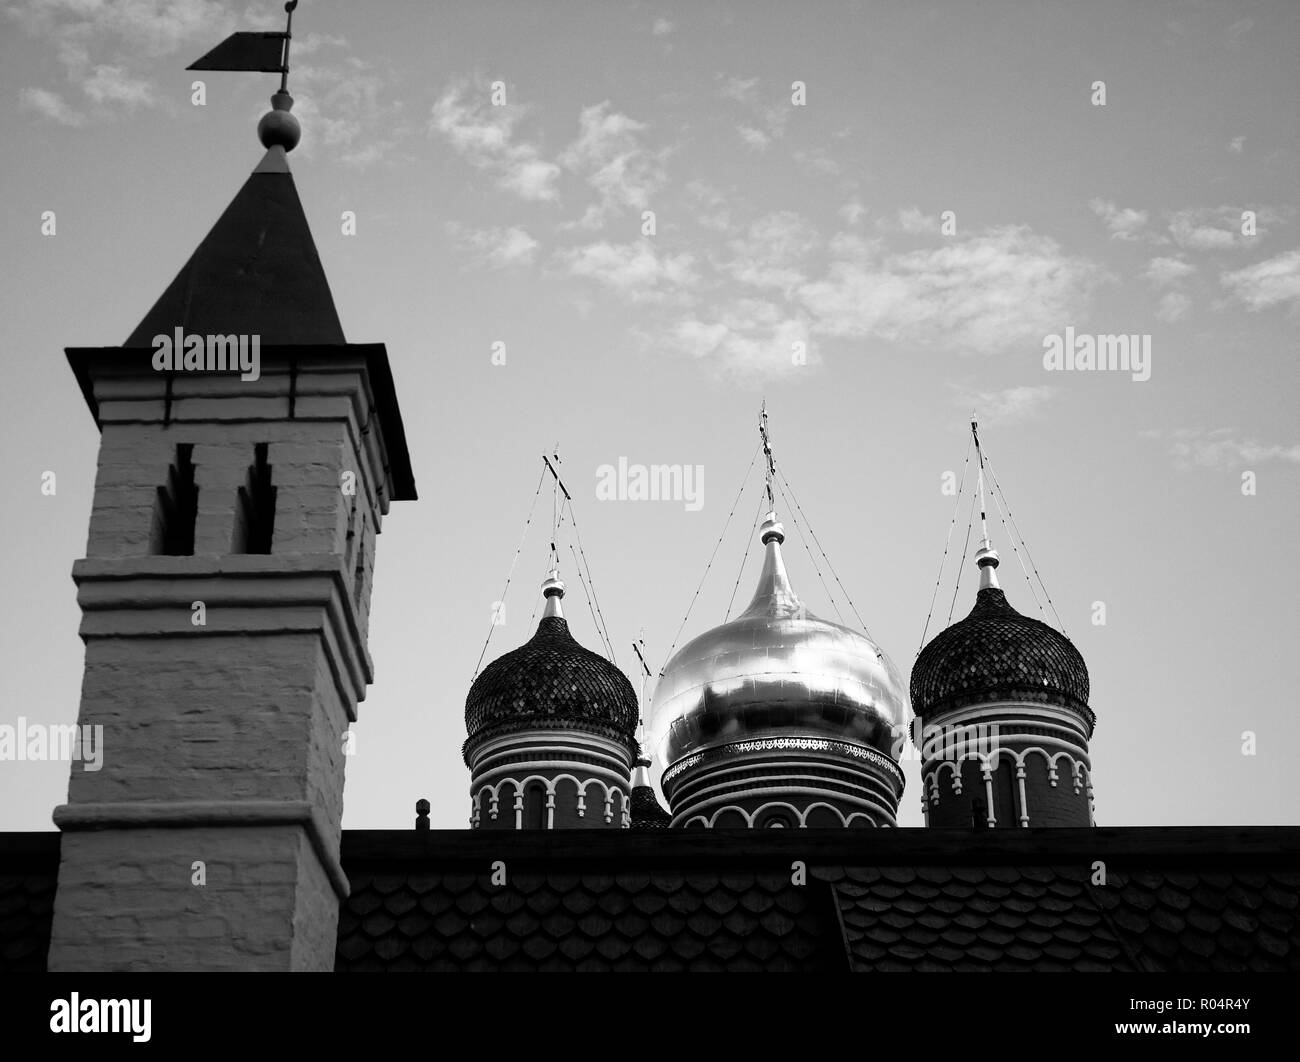 Église proche du Kremlin de Moscou en été, photo en noir et blanc Banque D'Images